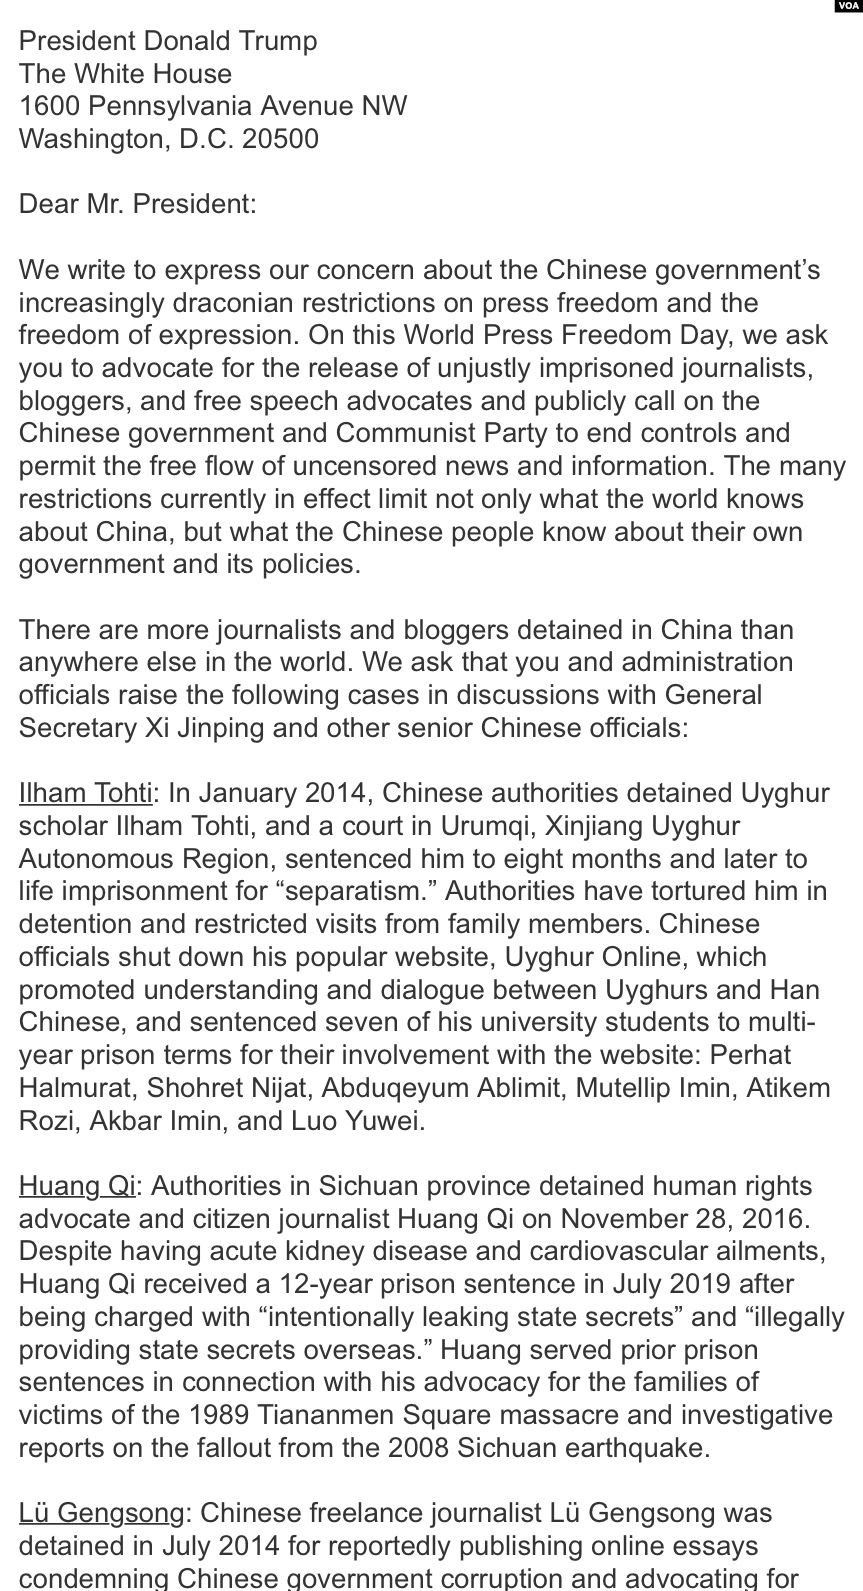 国会及行政当局中国委员会促总统倡导中国言论自由